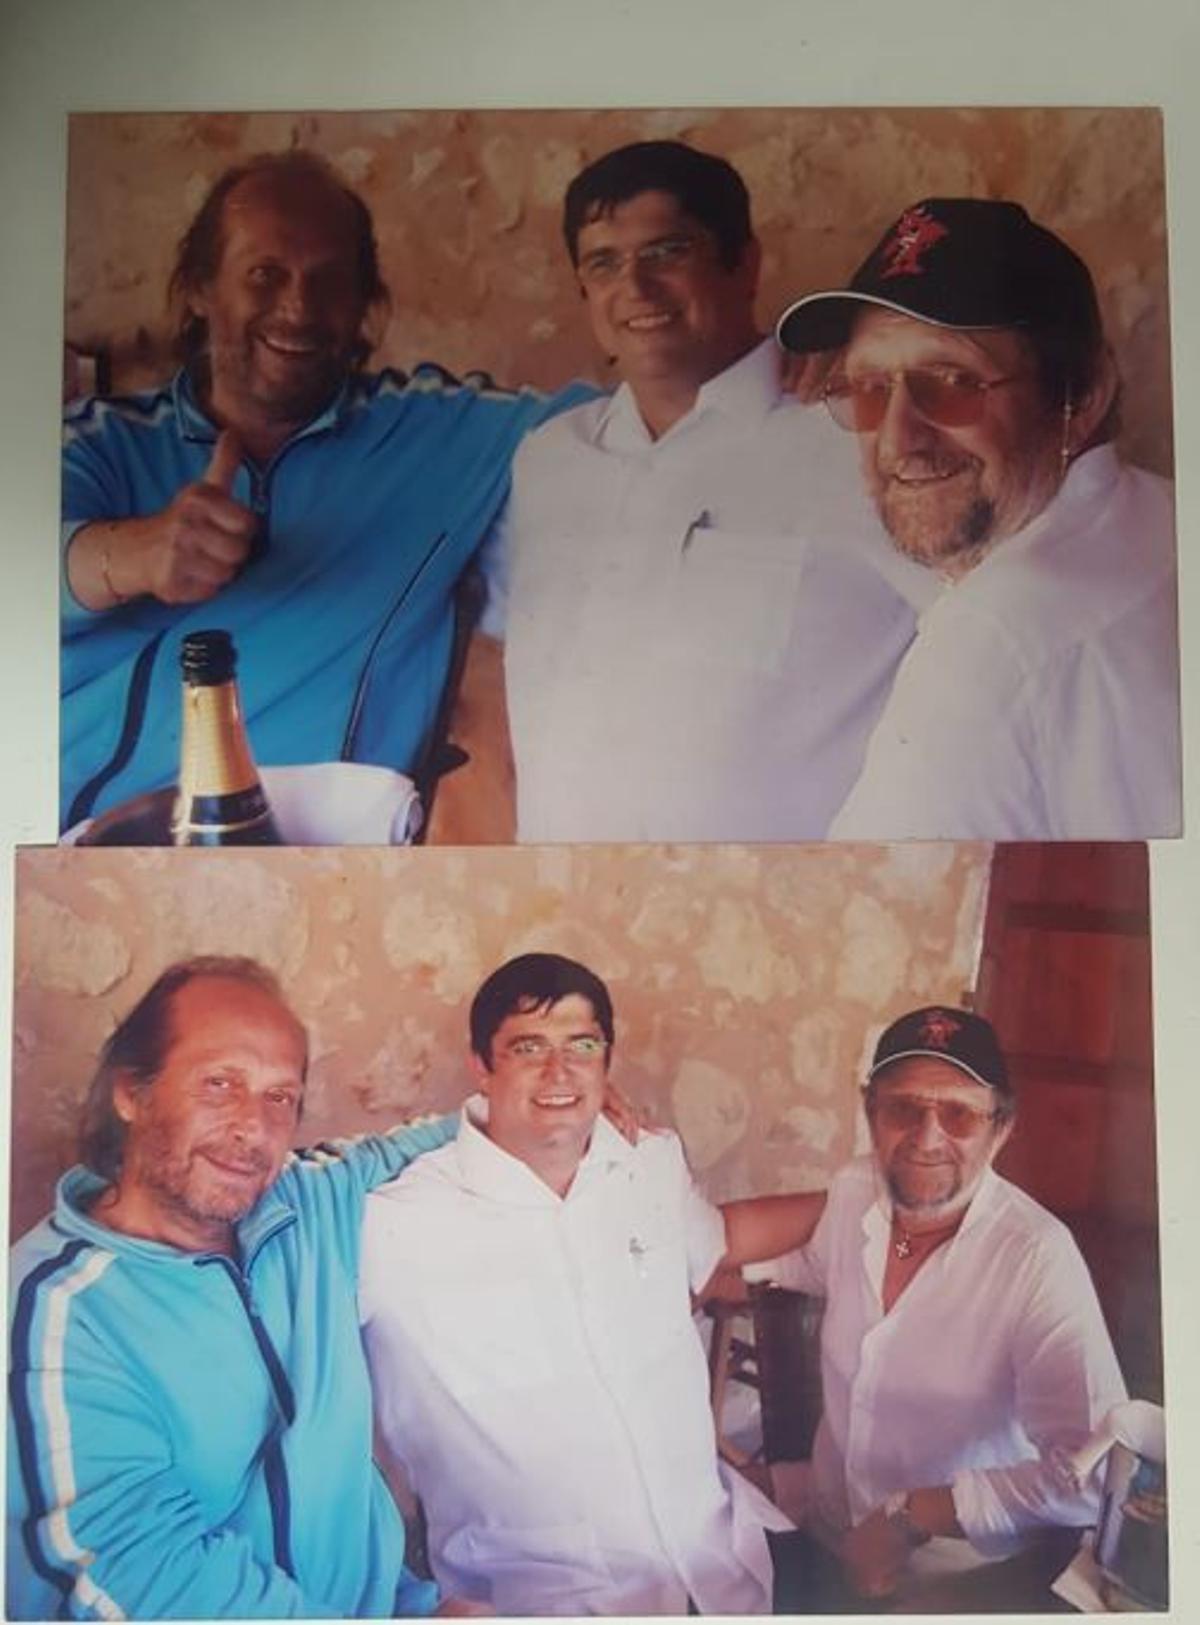 aco de Lucía, Pere Ferriol y Tomeu Penya, durante una de las comidas que hacía con sus amigos por la geografía mallorquina